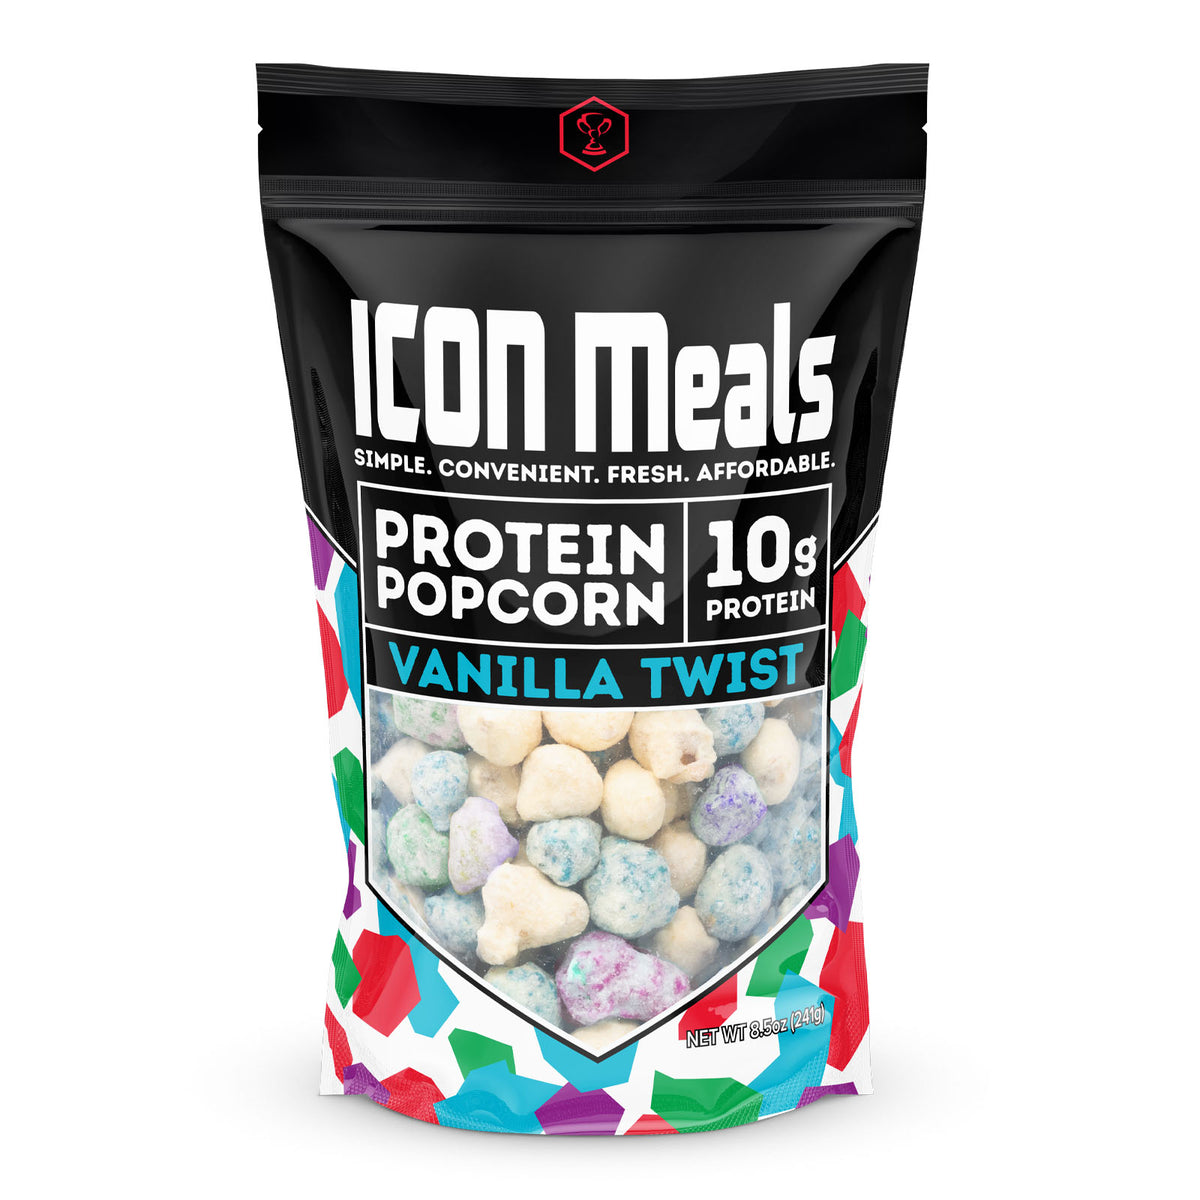 Vanilla Twist Protein Popcorn – ICON Meals